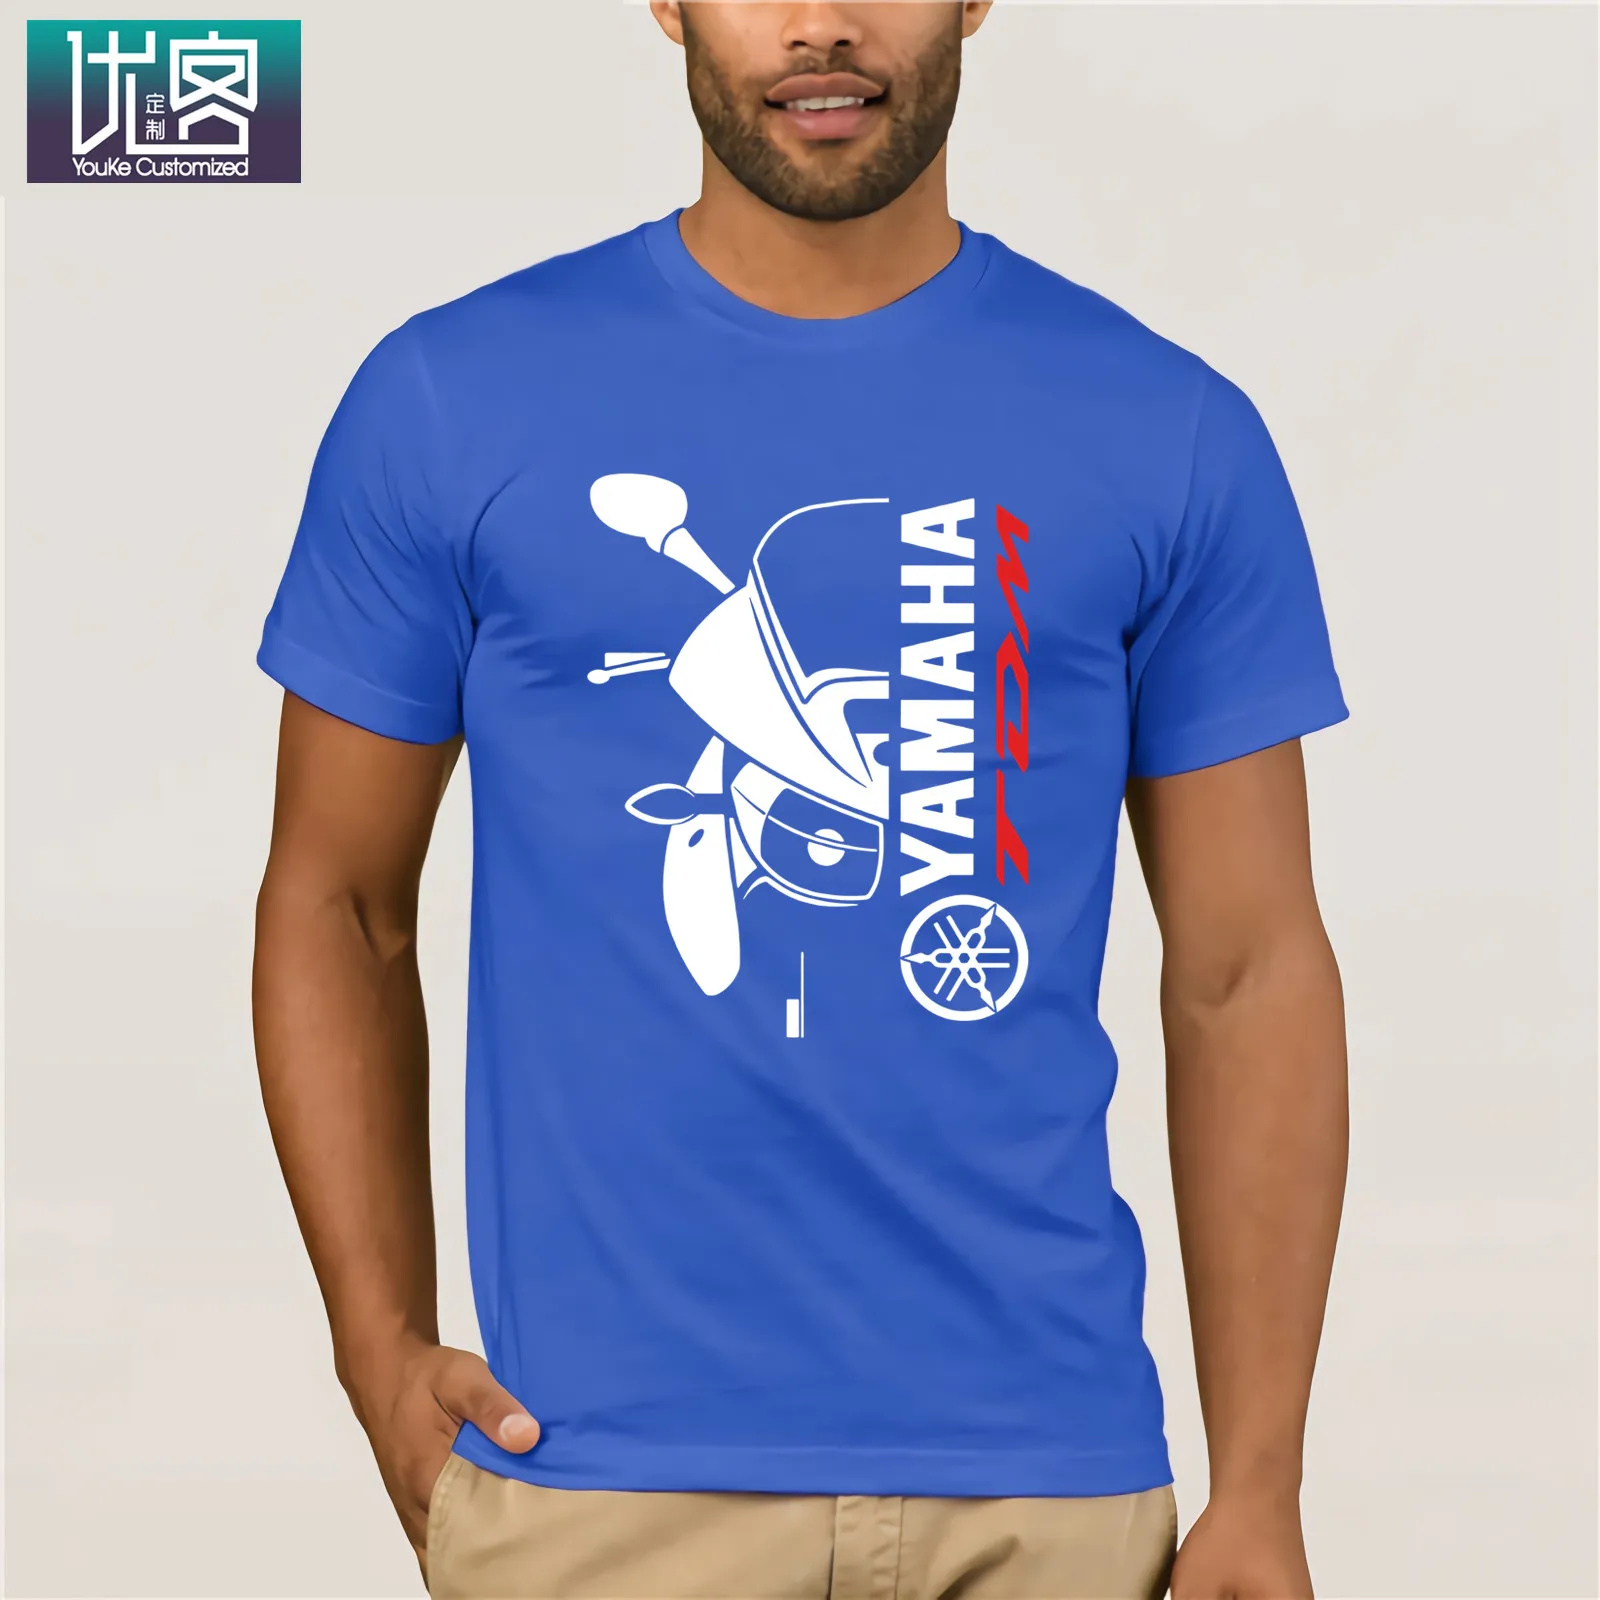 Двухсторонняя футболка Yama Tdm 900 Авто Черная Мужская футболка Летняя мужская футболка с круглым вырезом модные дешевые футболки на заказ - Цвет: Blue